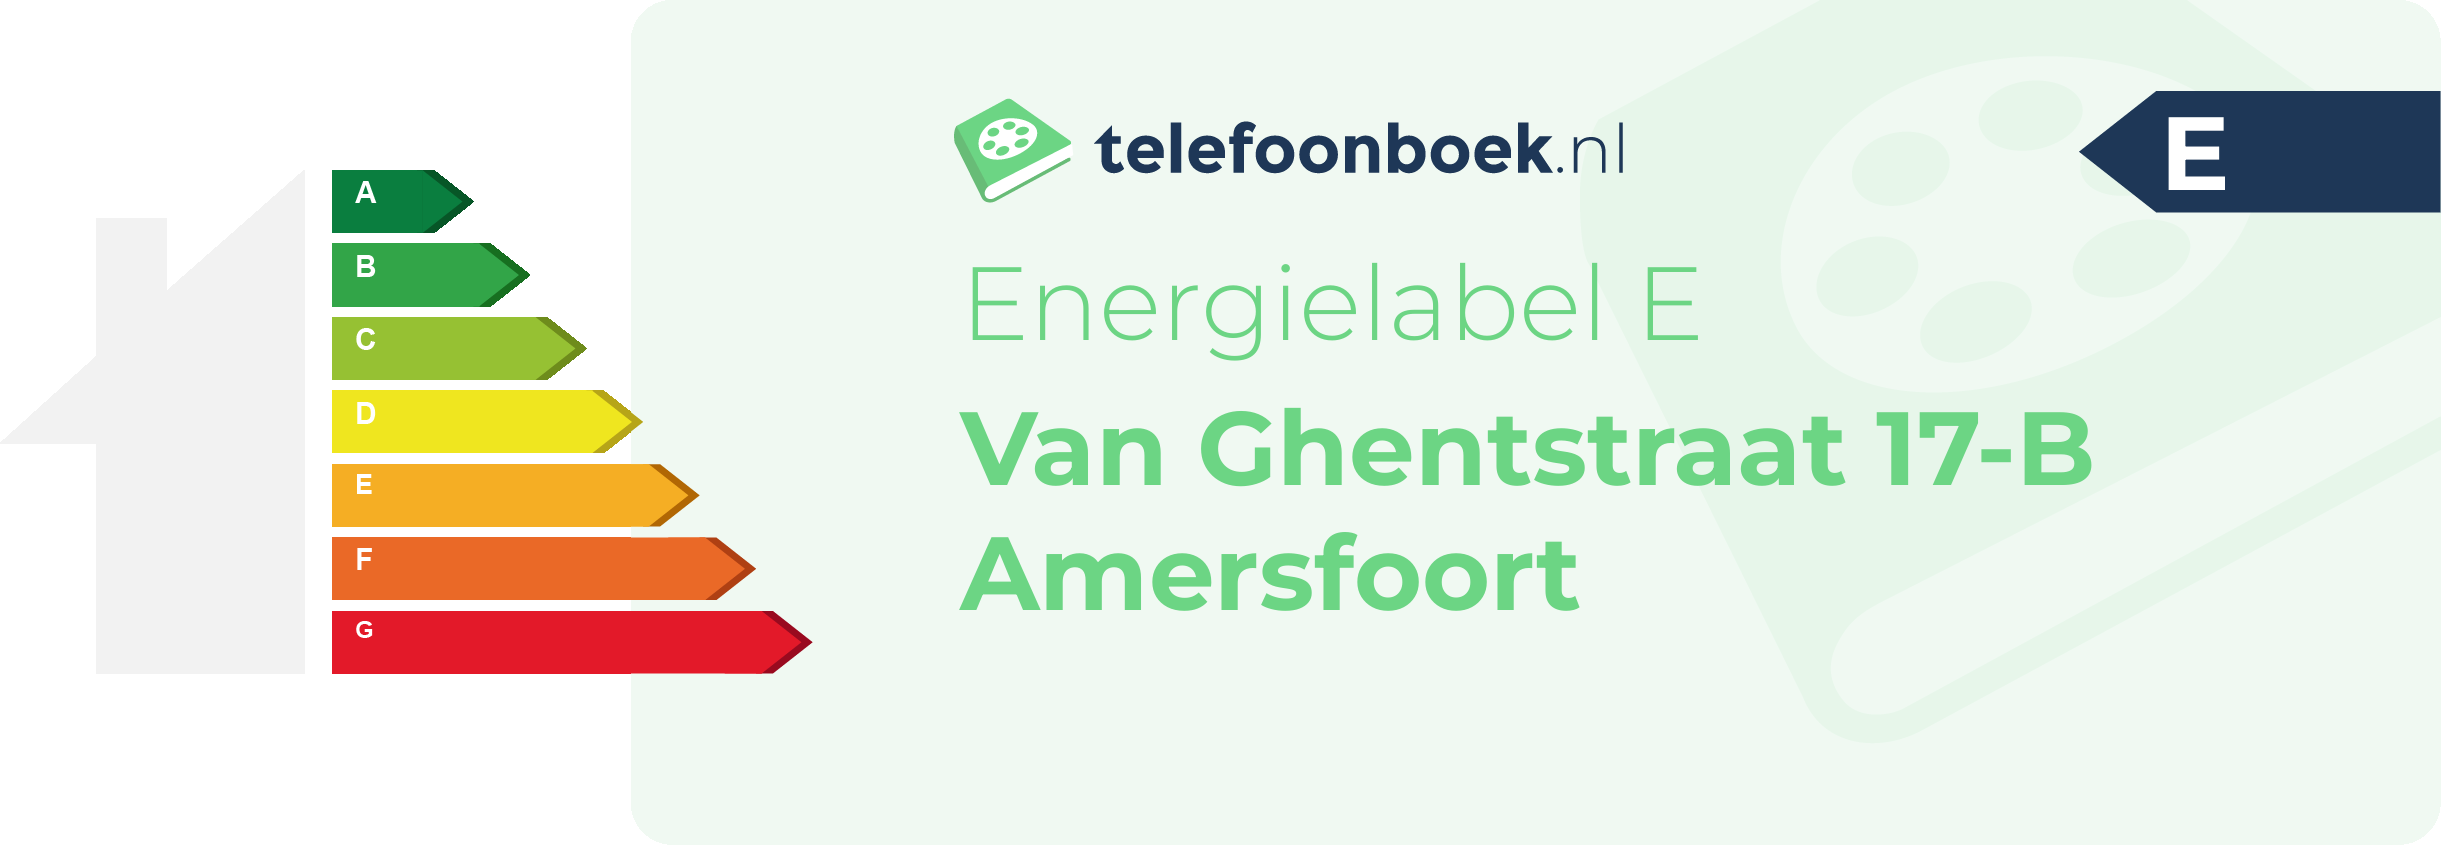 Energielabel Van Ghentstraat 17-B Amersfoort